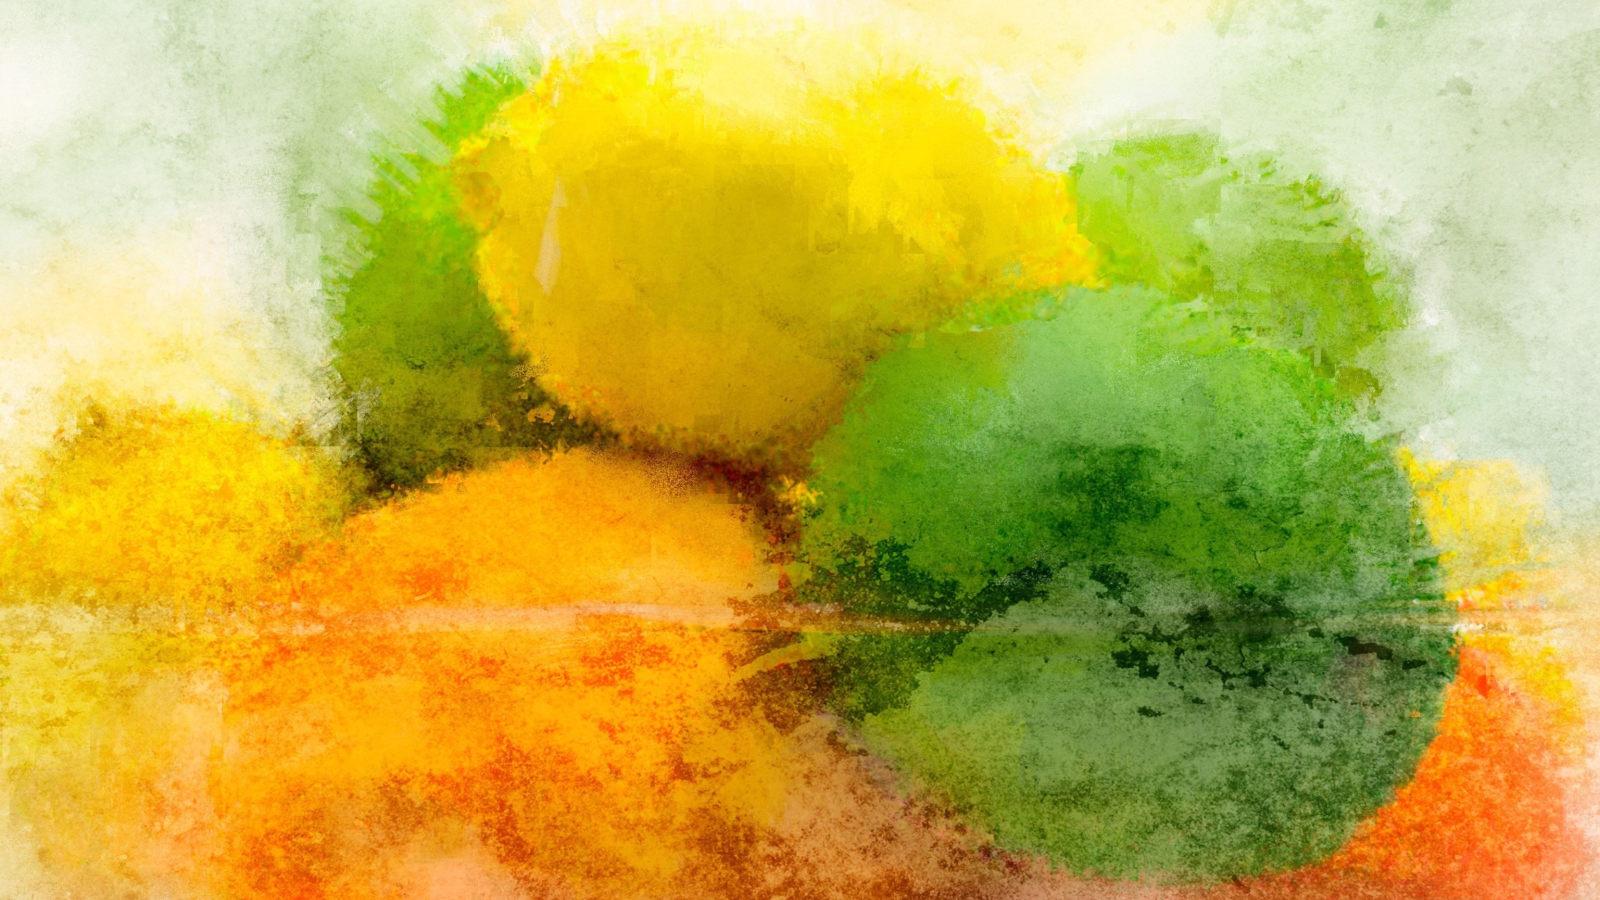 Обои Lemon And Lime Abstract 1600x900